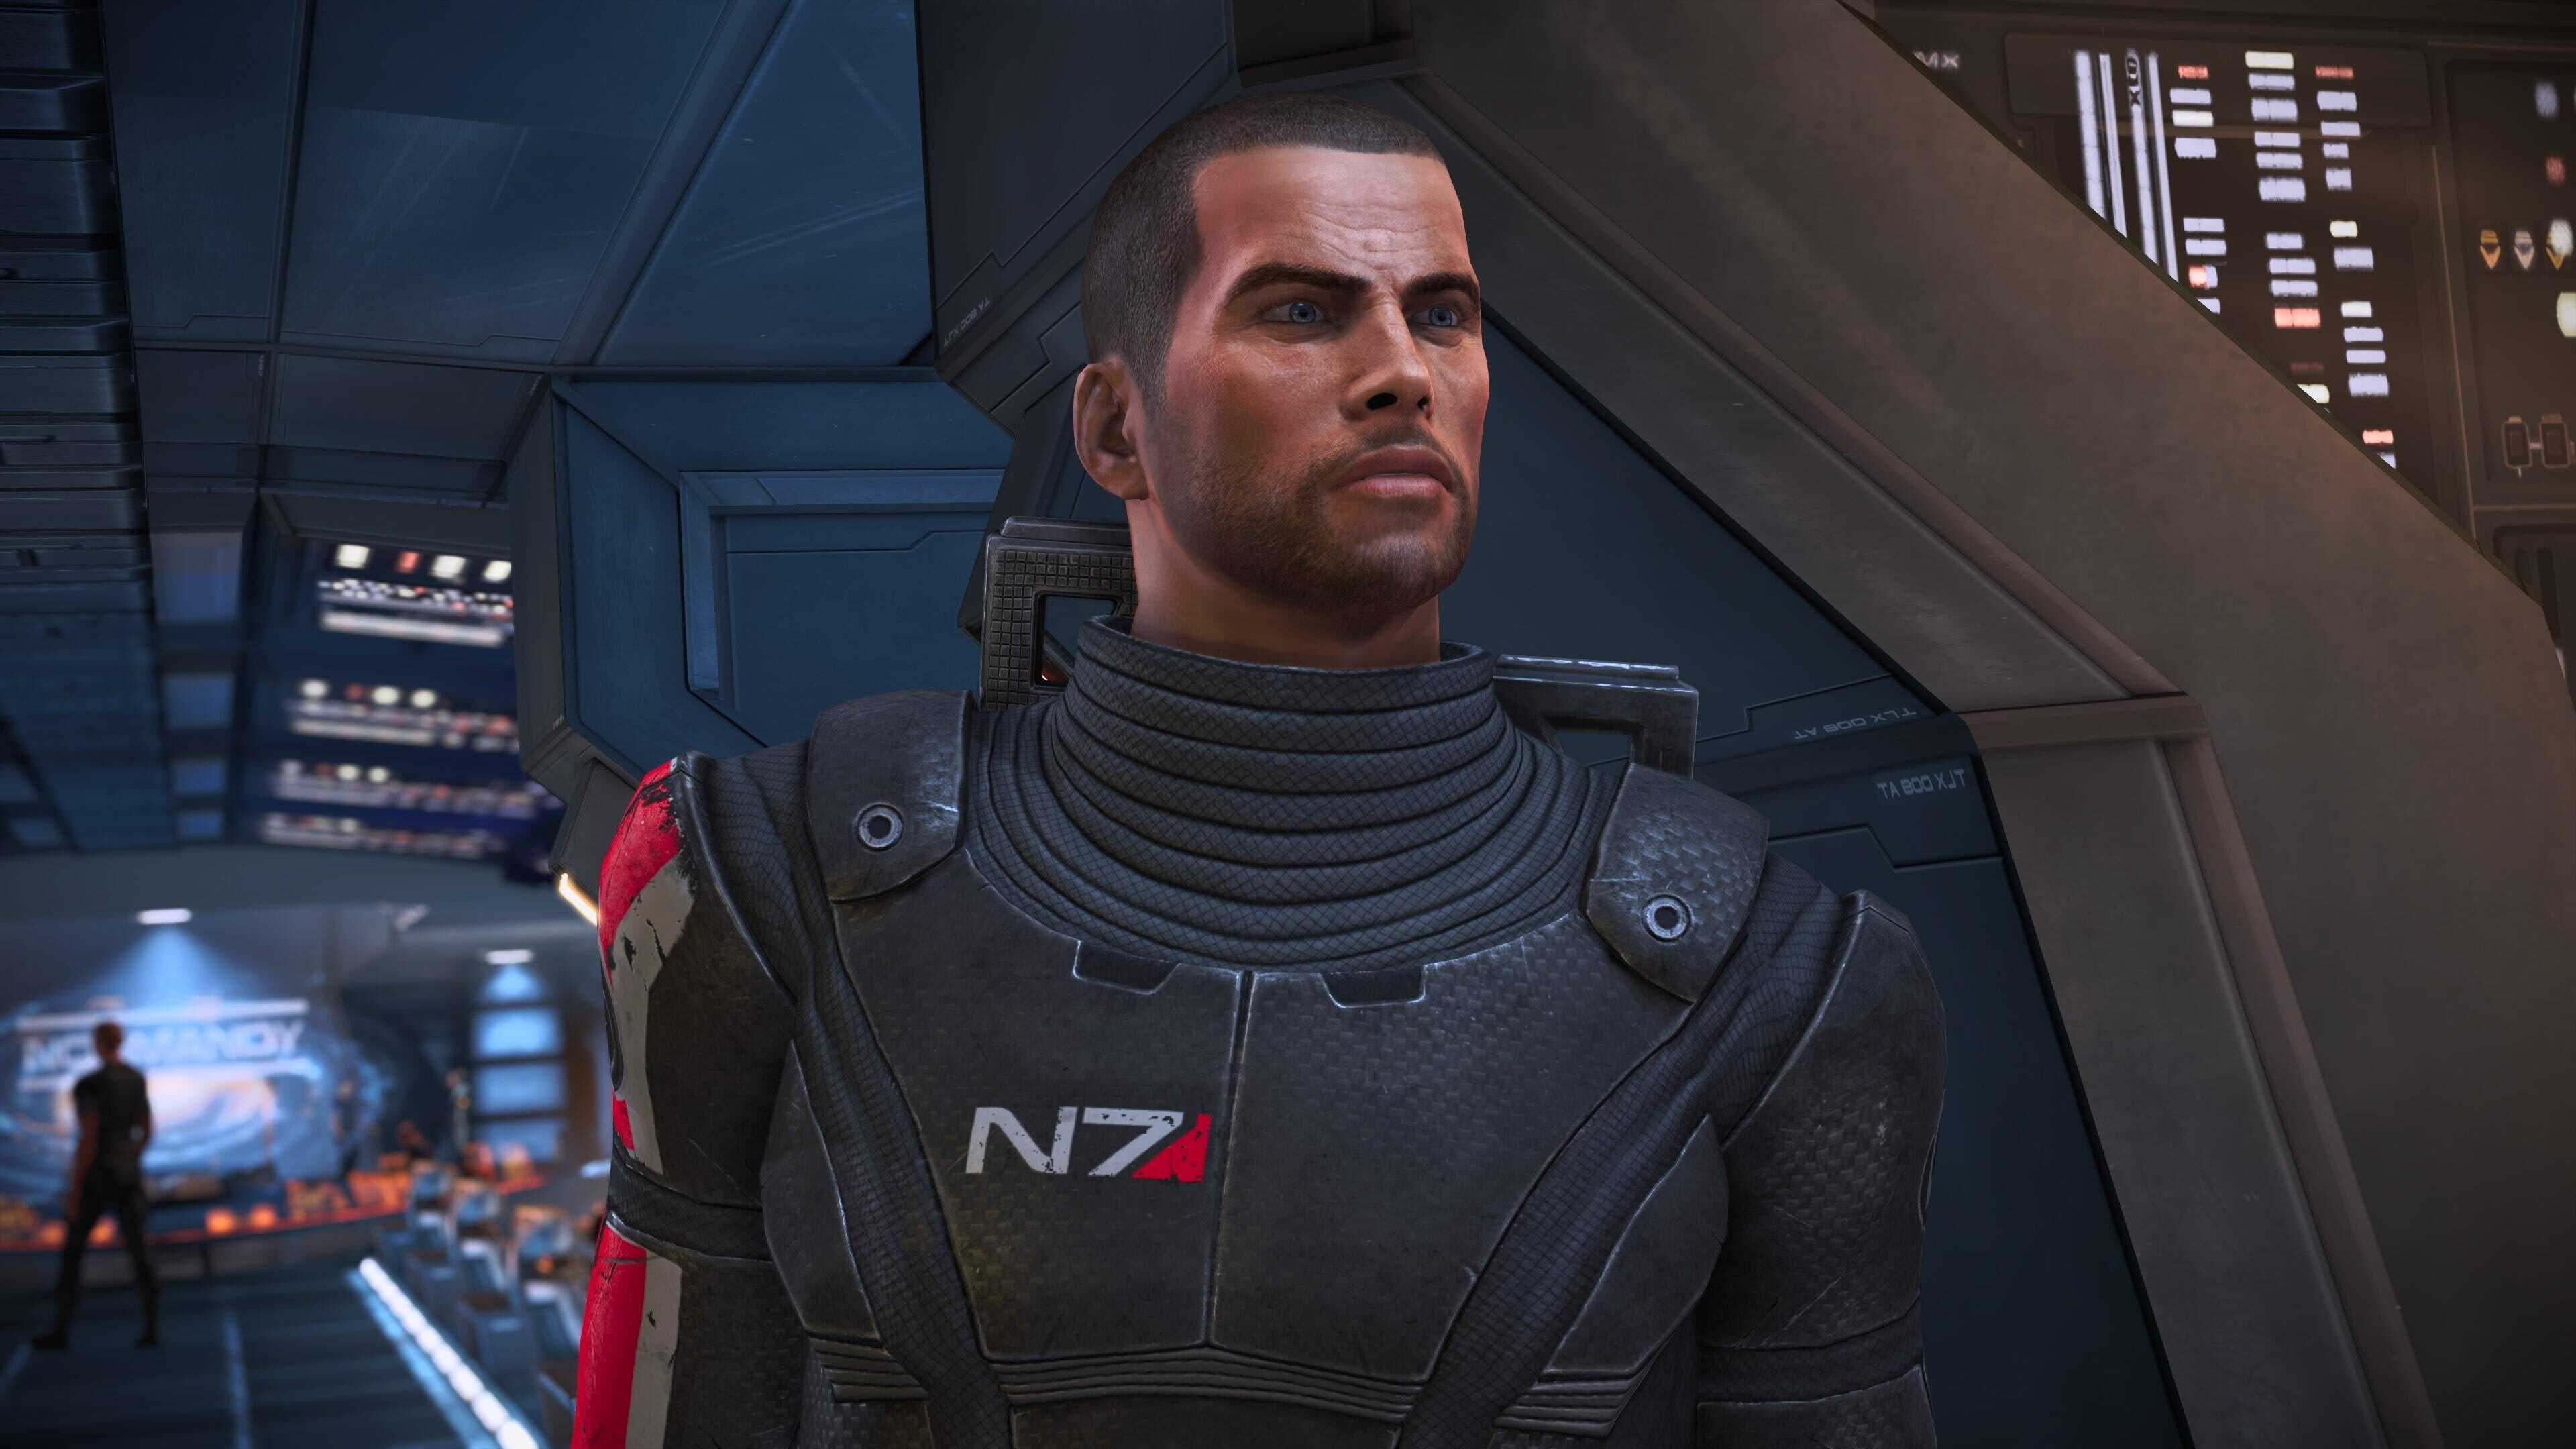 Узнайте убить или освободить королеву Рахни в Mass Effect Legendary Edition, какие сложности вас ожидают, что нужно сделать для выполнения цели, читайте в нашем руководстве